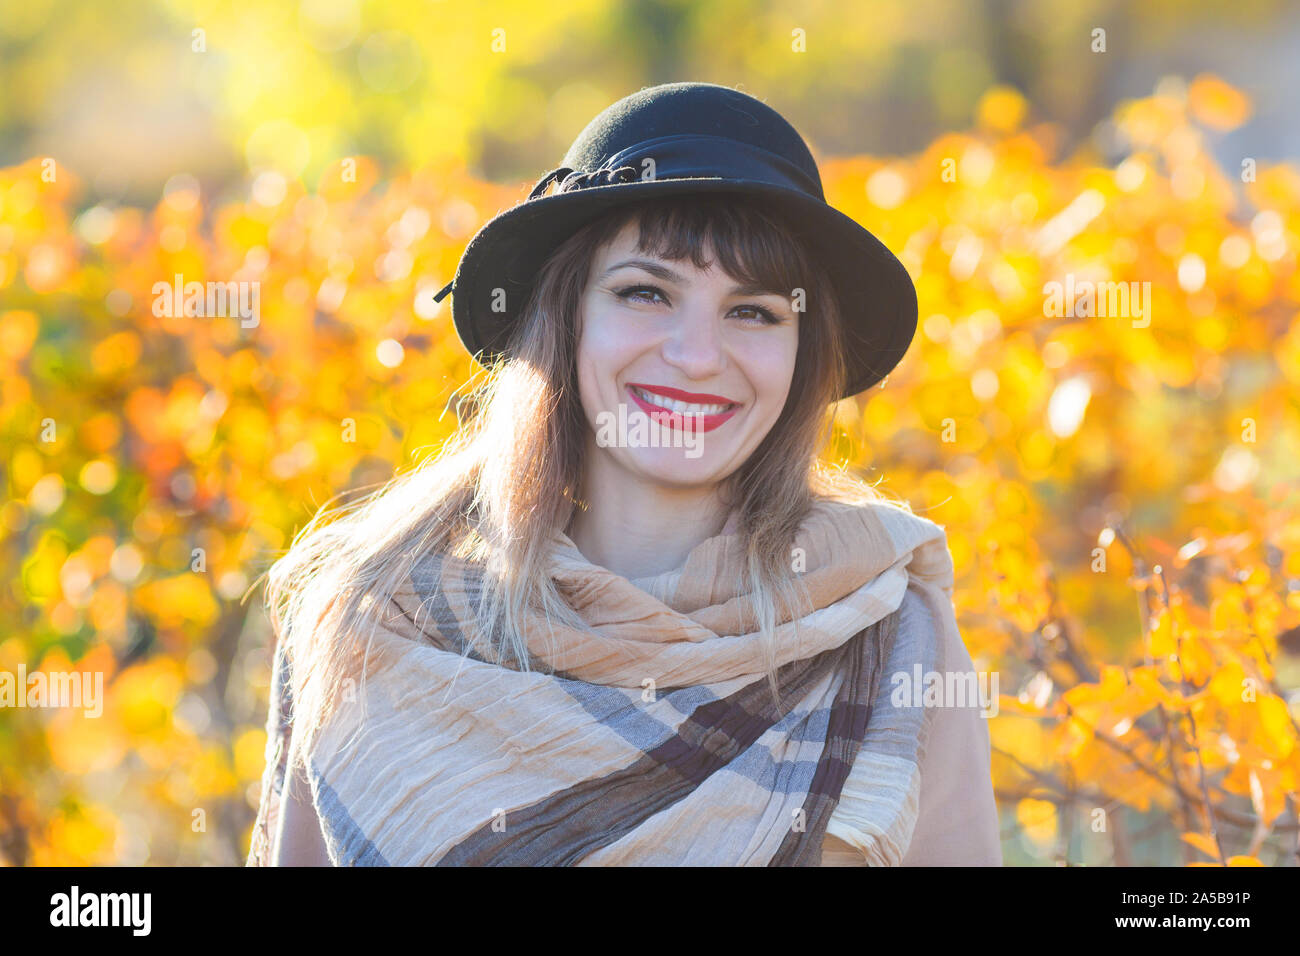 Eine hübsche Frau von 30-35 Jahre alt mit einem schönen Lächeln in einem Hut und Mantel in der Nähe von einem gelben Bush. Stockfoto